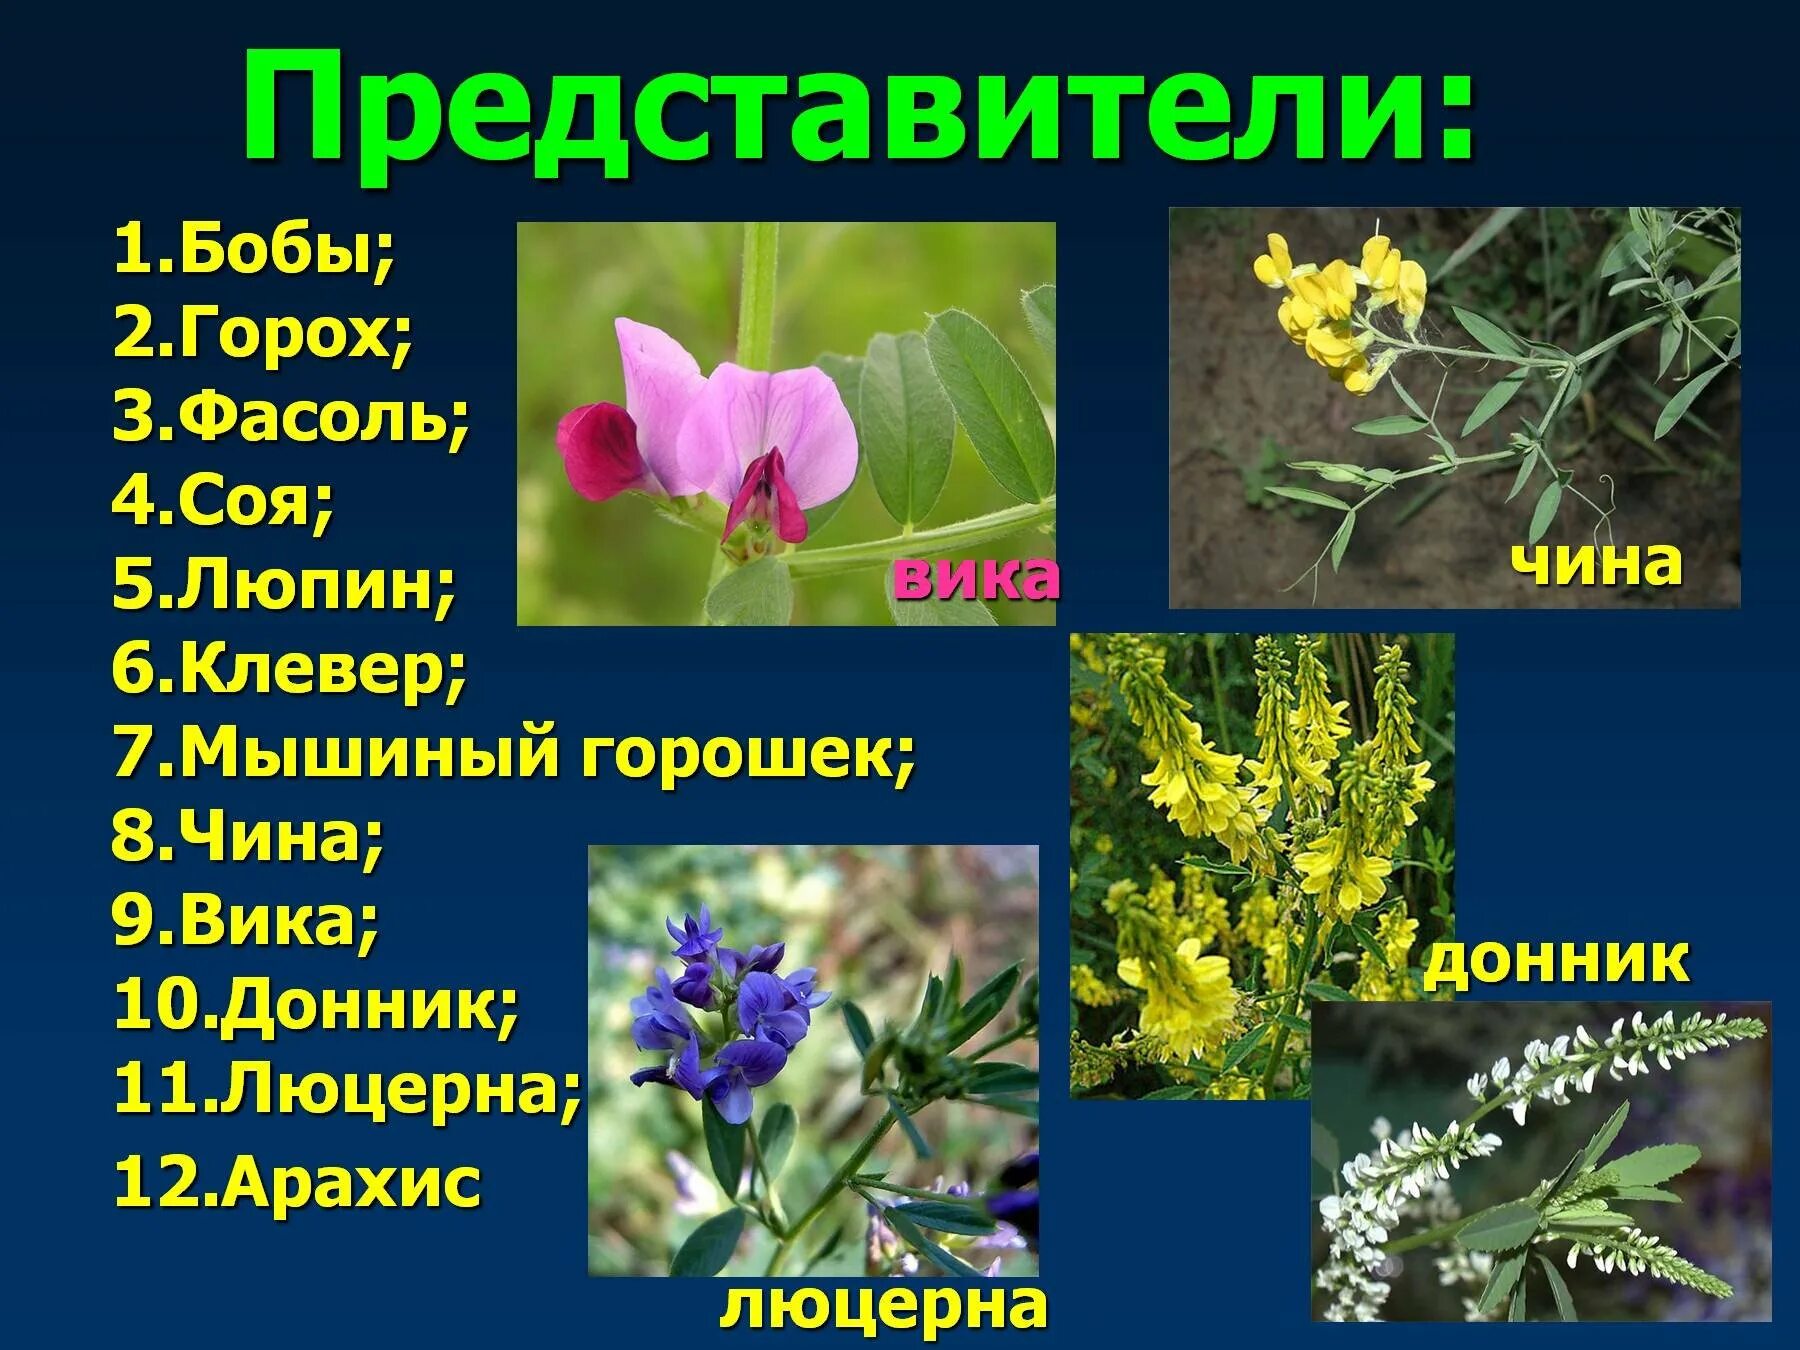 3 покрытосеменных растений название